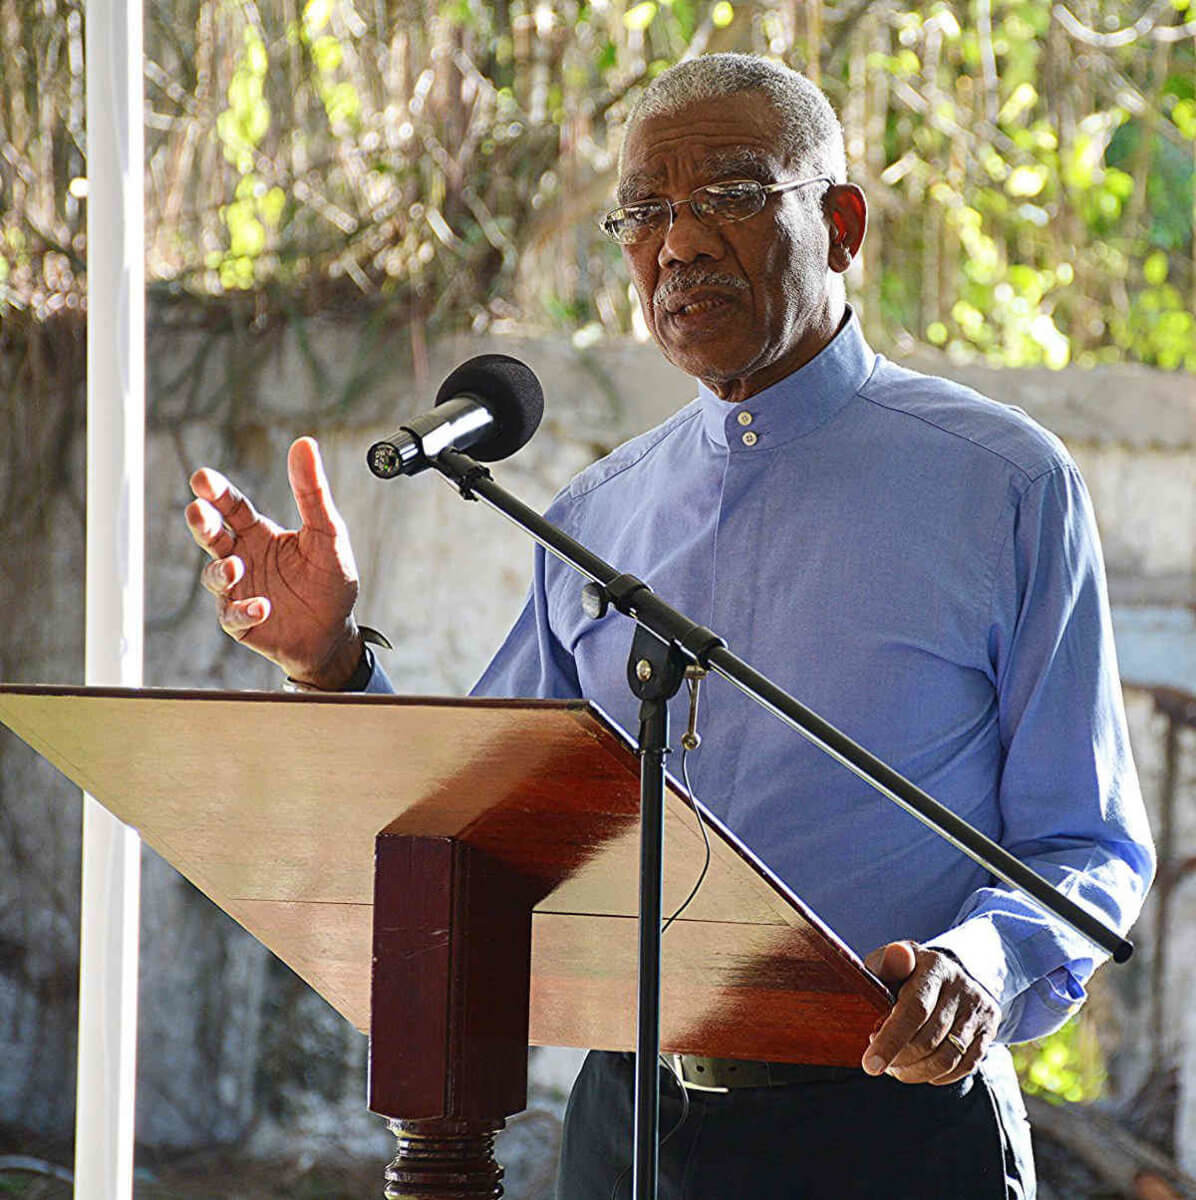 Guyana’s CARICOM embrace|Guyana’s CARICOM embrace